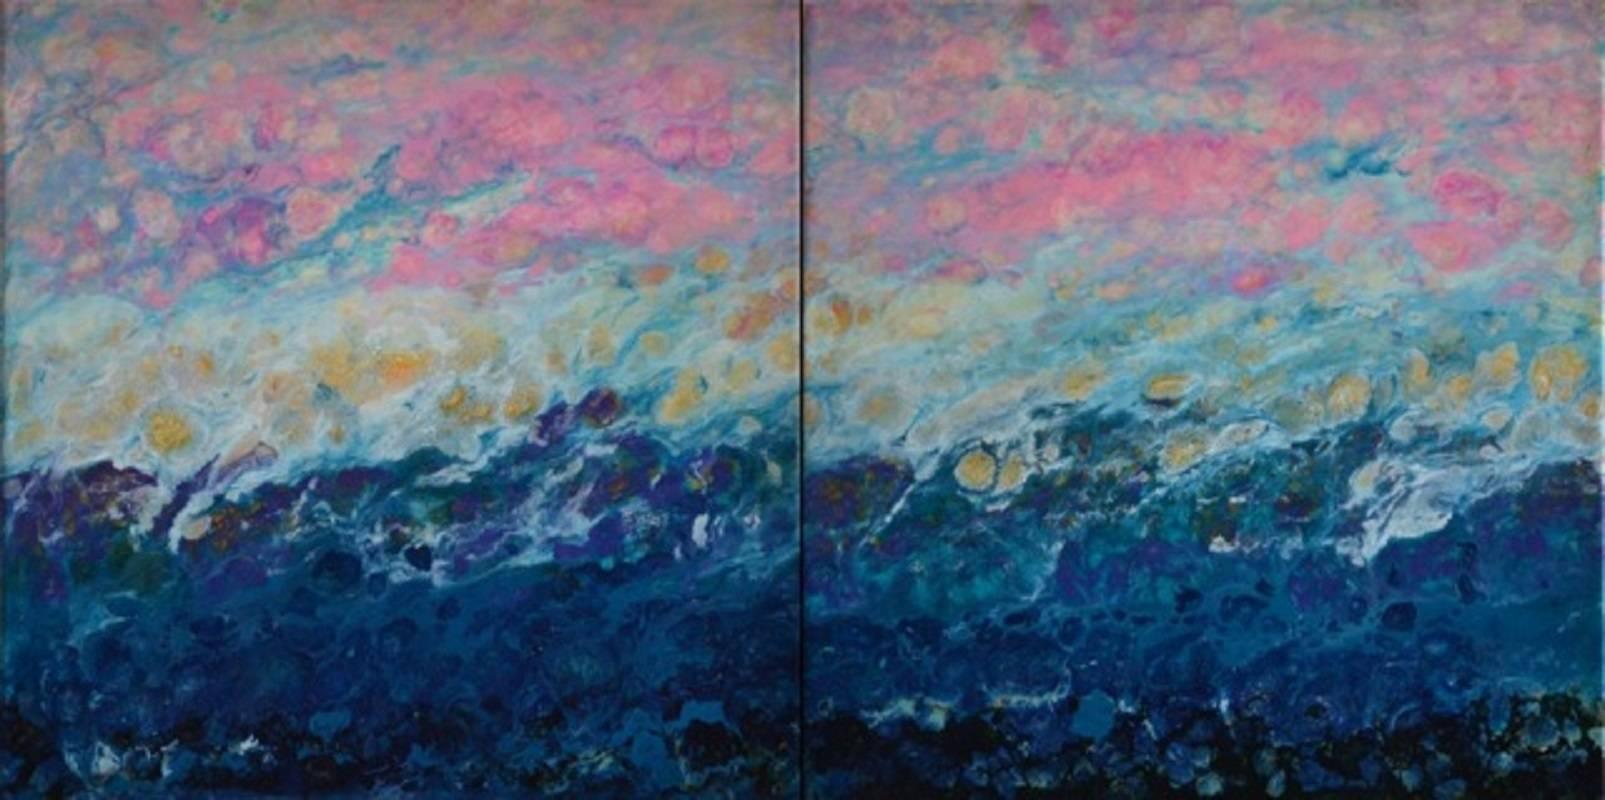 Abstract Painting Marie Danielle Leblanc - Pantalon laqué bleu, abstrait, paysage, peinture, techniques mixtes, diptyque, rose